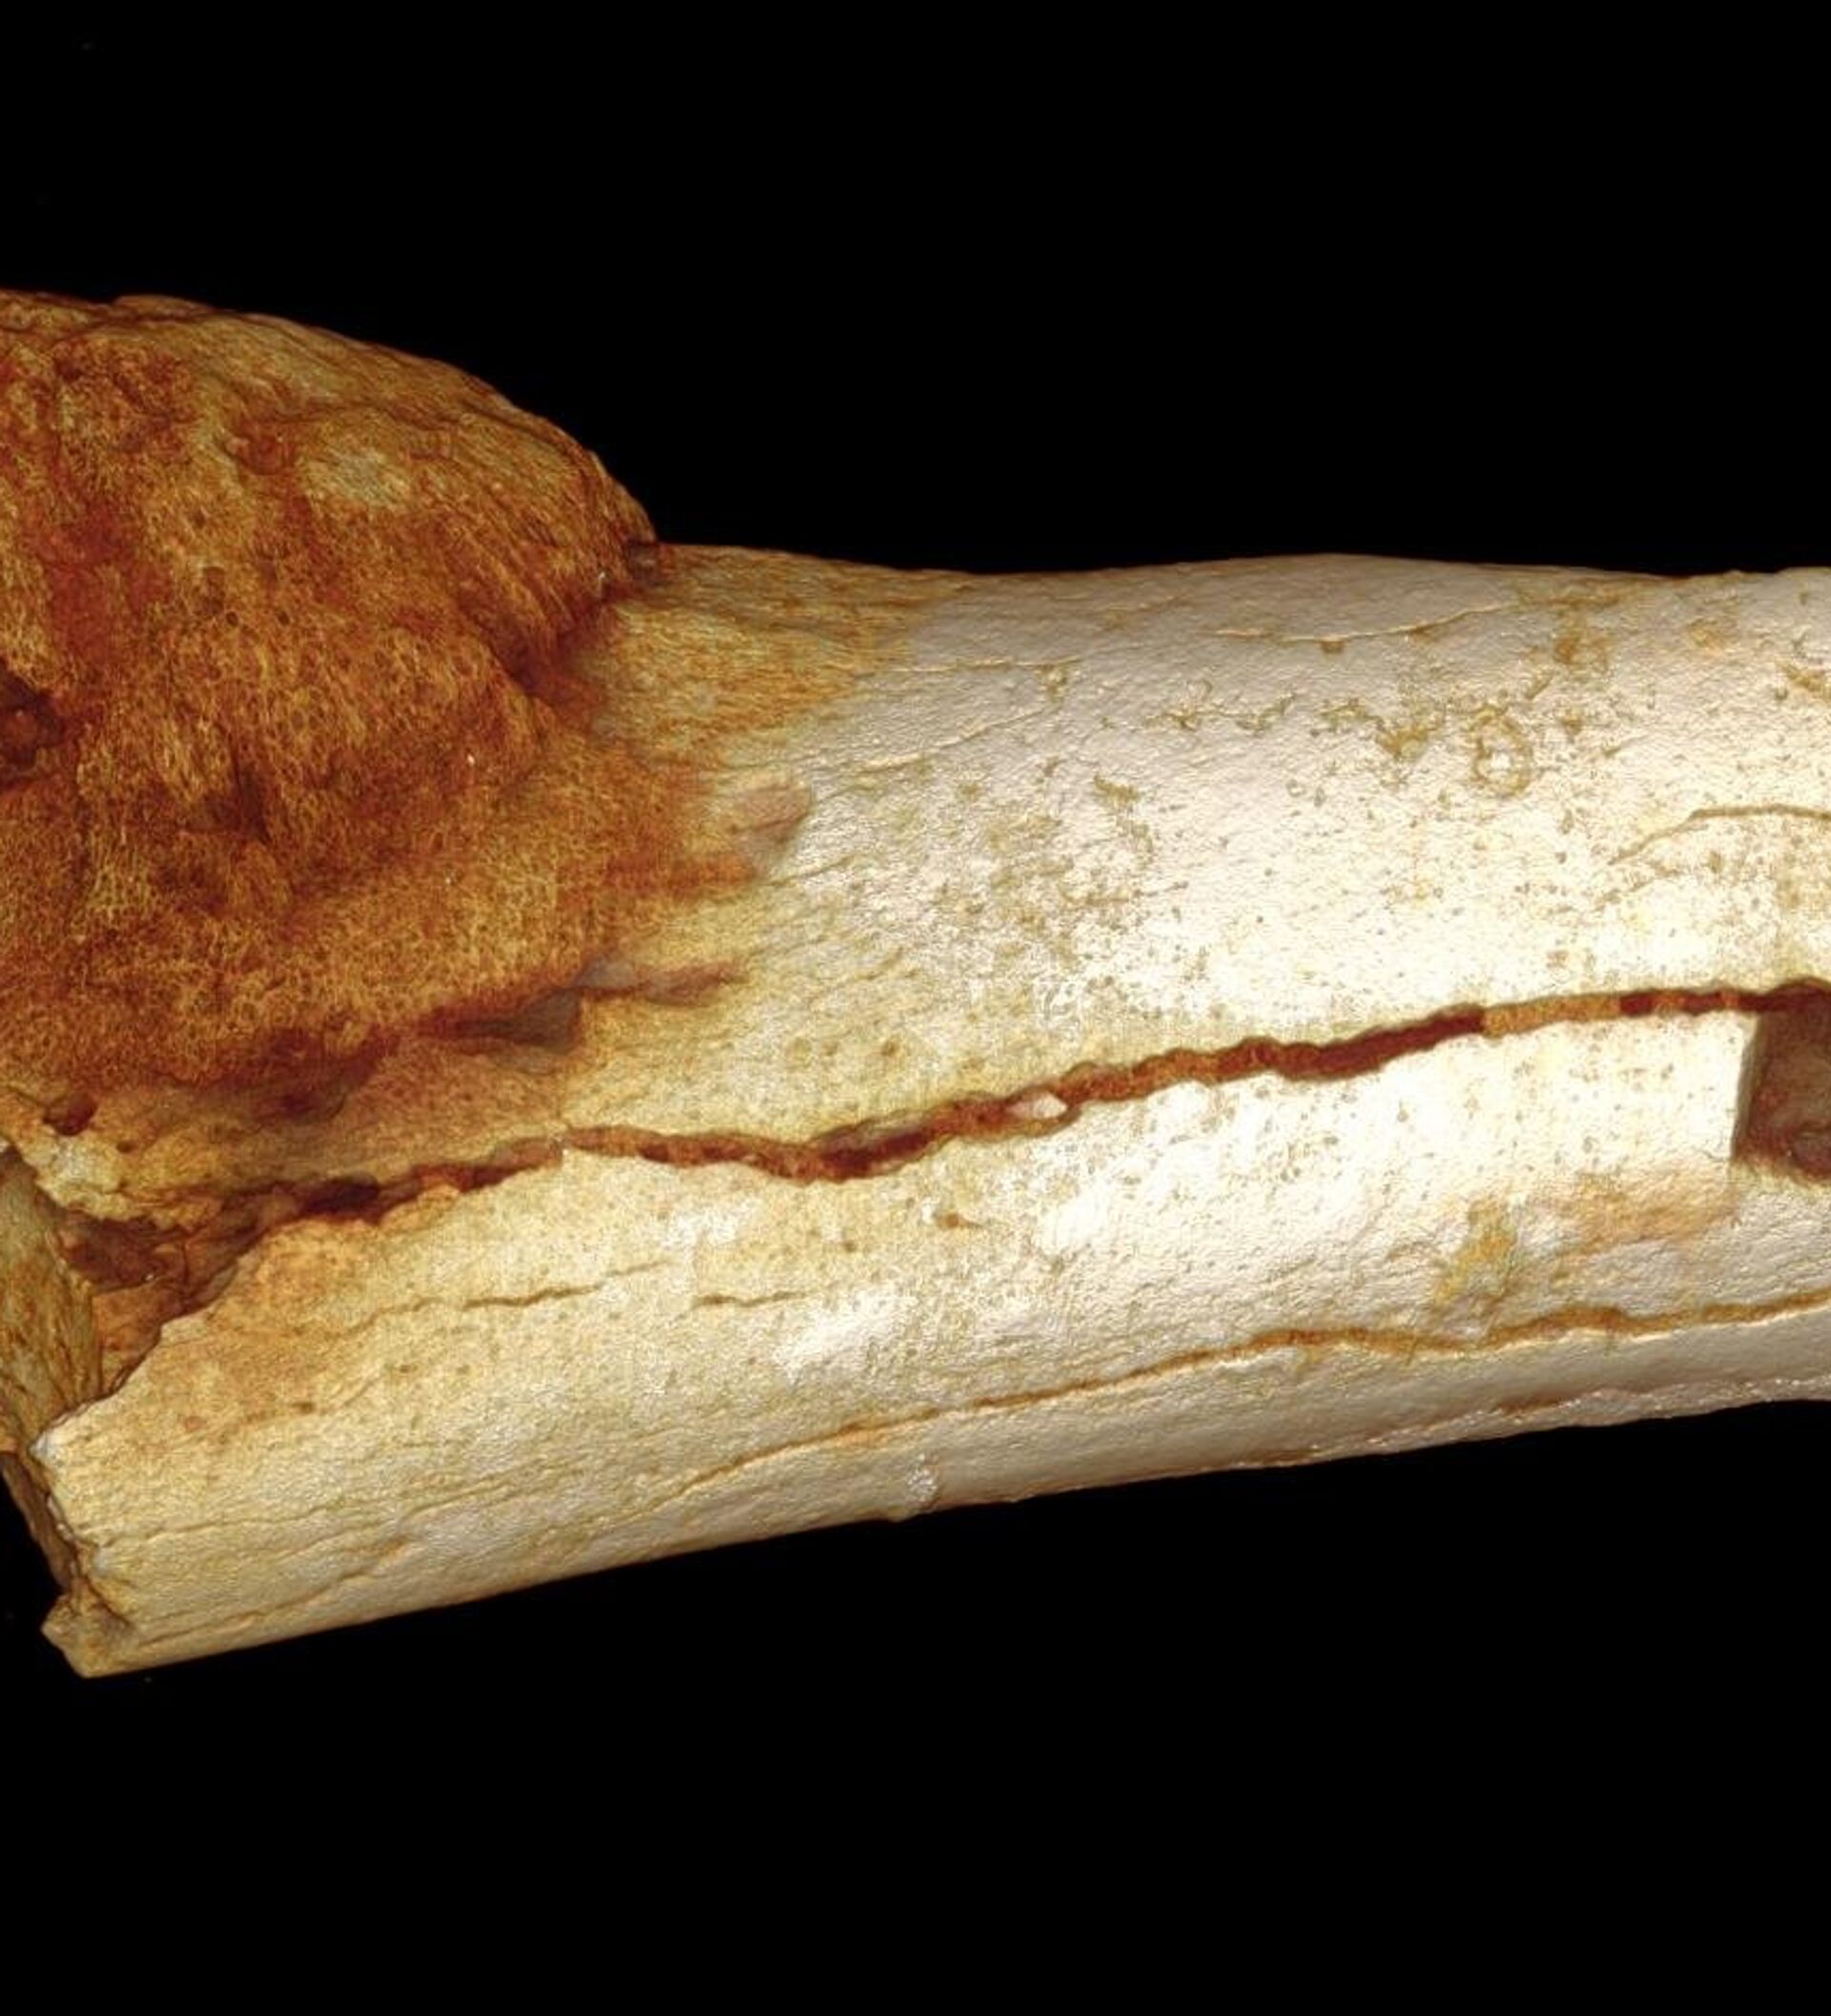 Old bone. Злокачественная опухоль кости. Онкология в древние времена. Самые древние сайты.